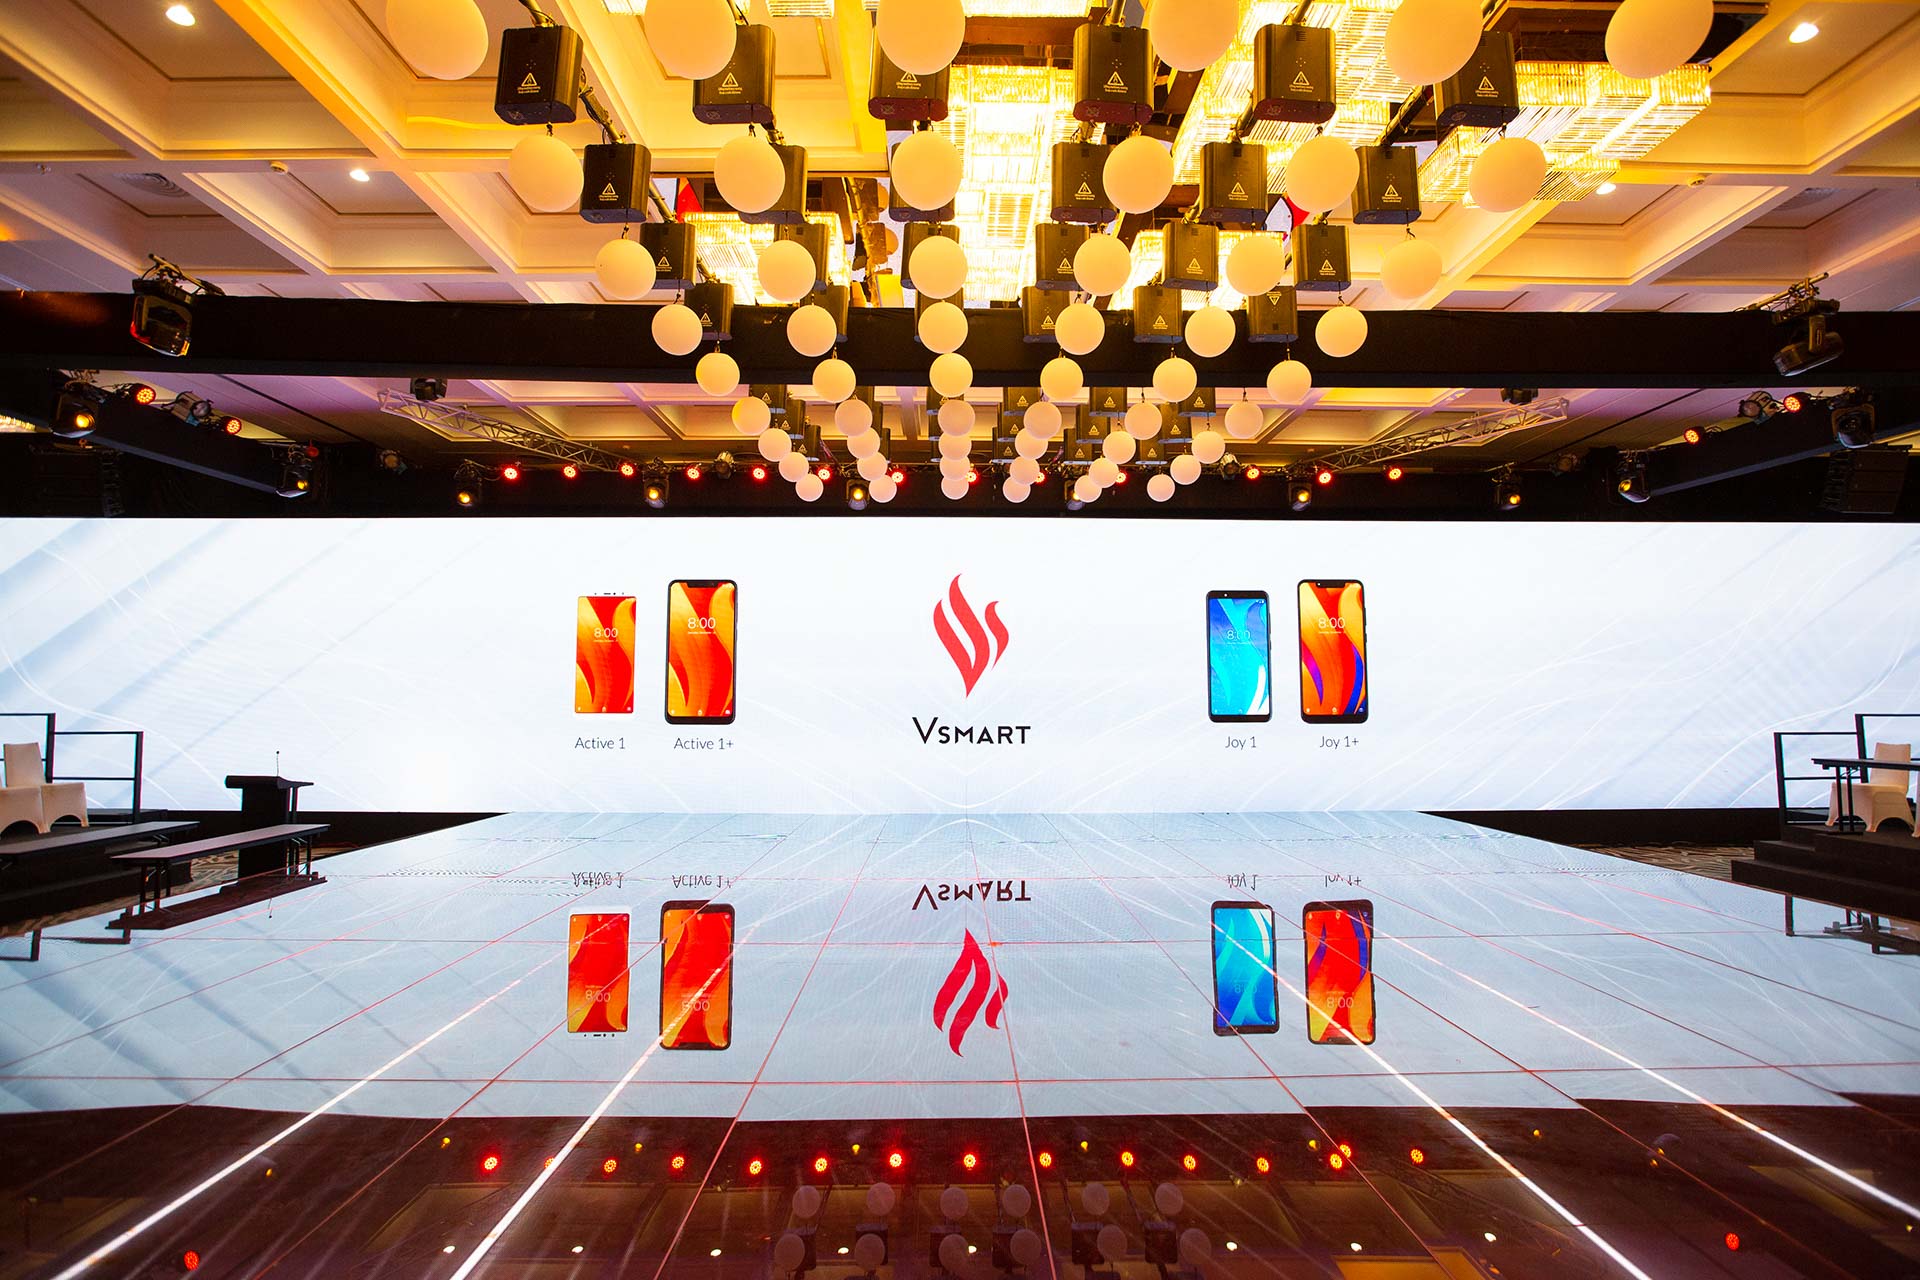 4 dòng điện thoại thông minh Vsmart đang được chờ đợi sẽ chính thức được mở bán trên 5000 cửa hàng trên cả nước từ các chuỗi phân phối lớn như Thế giới di động, VinPro, FPT...đến các cửa hàng tự doanh và các kênh phân phối online từ ngày mai 15/12.